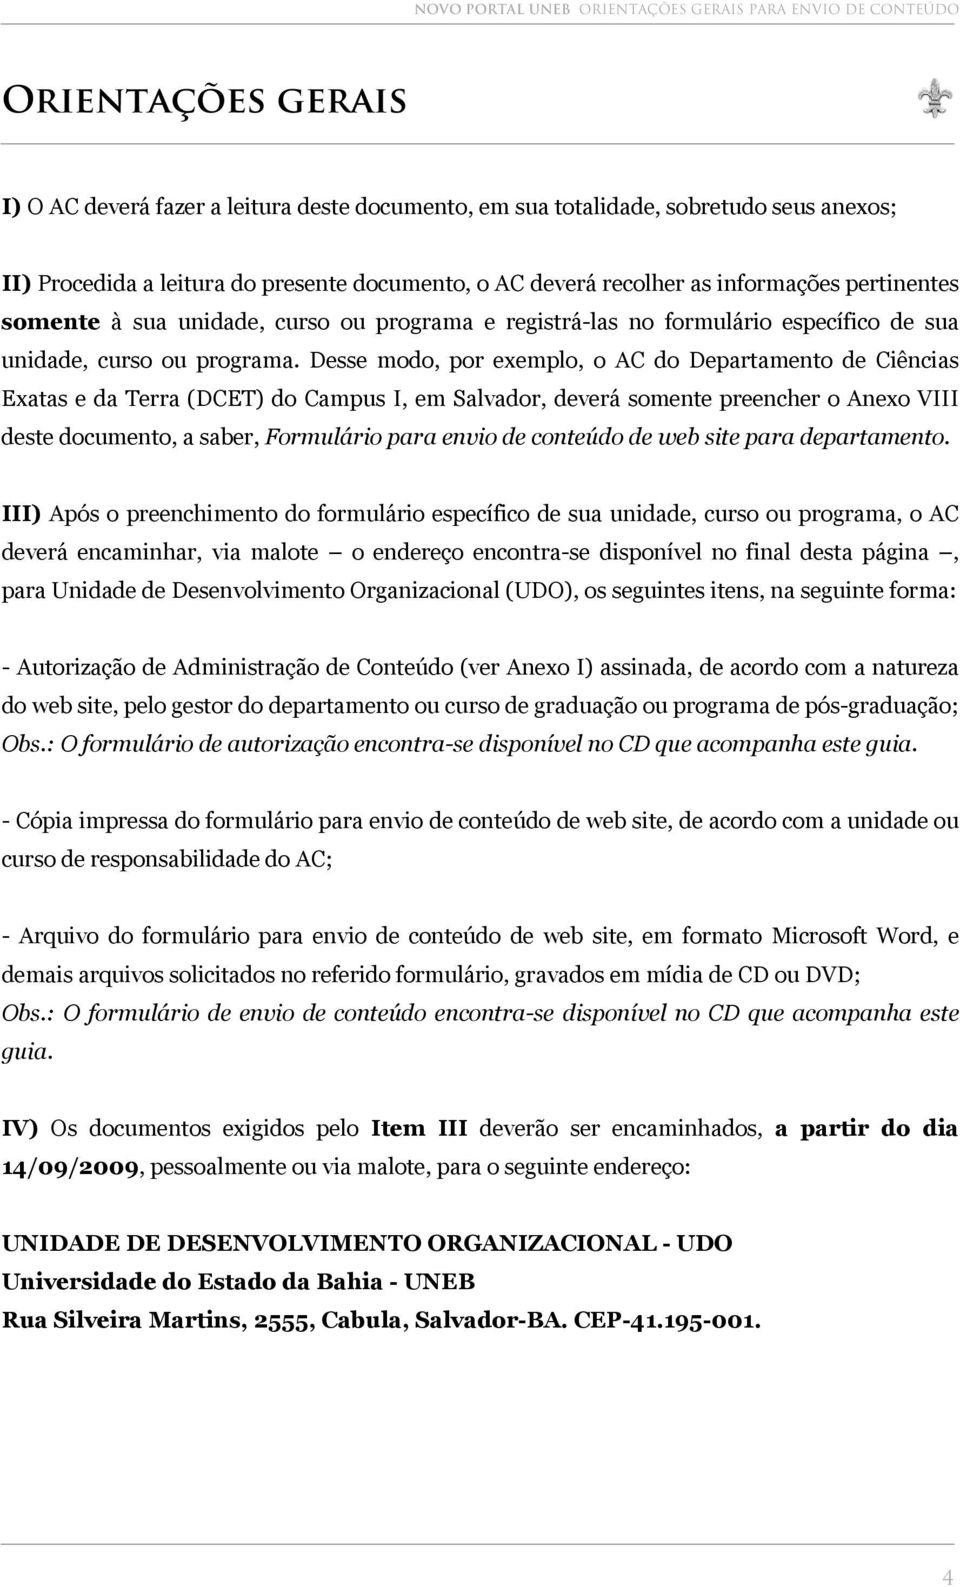 Desse modo, por exemplo, o AC do Departamento de Ciências Exatas e da Terra (DCET) do Campus I, em Salvador, deverá somente preencher o Anexo VIII deste documento, a saber, Formulário para envio de